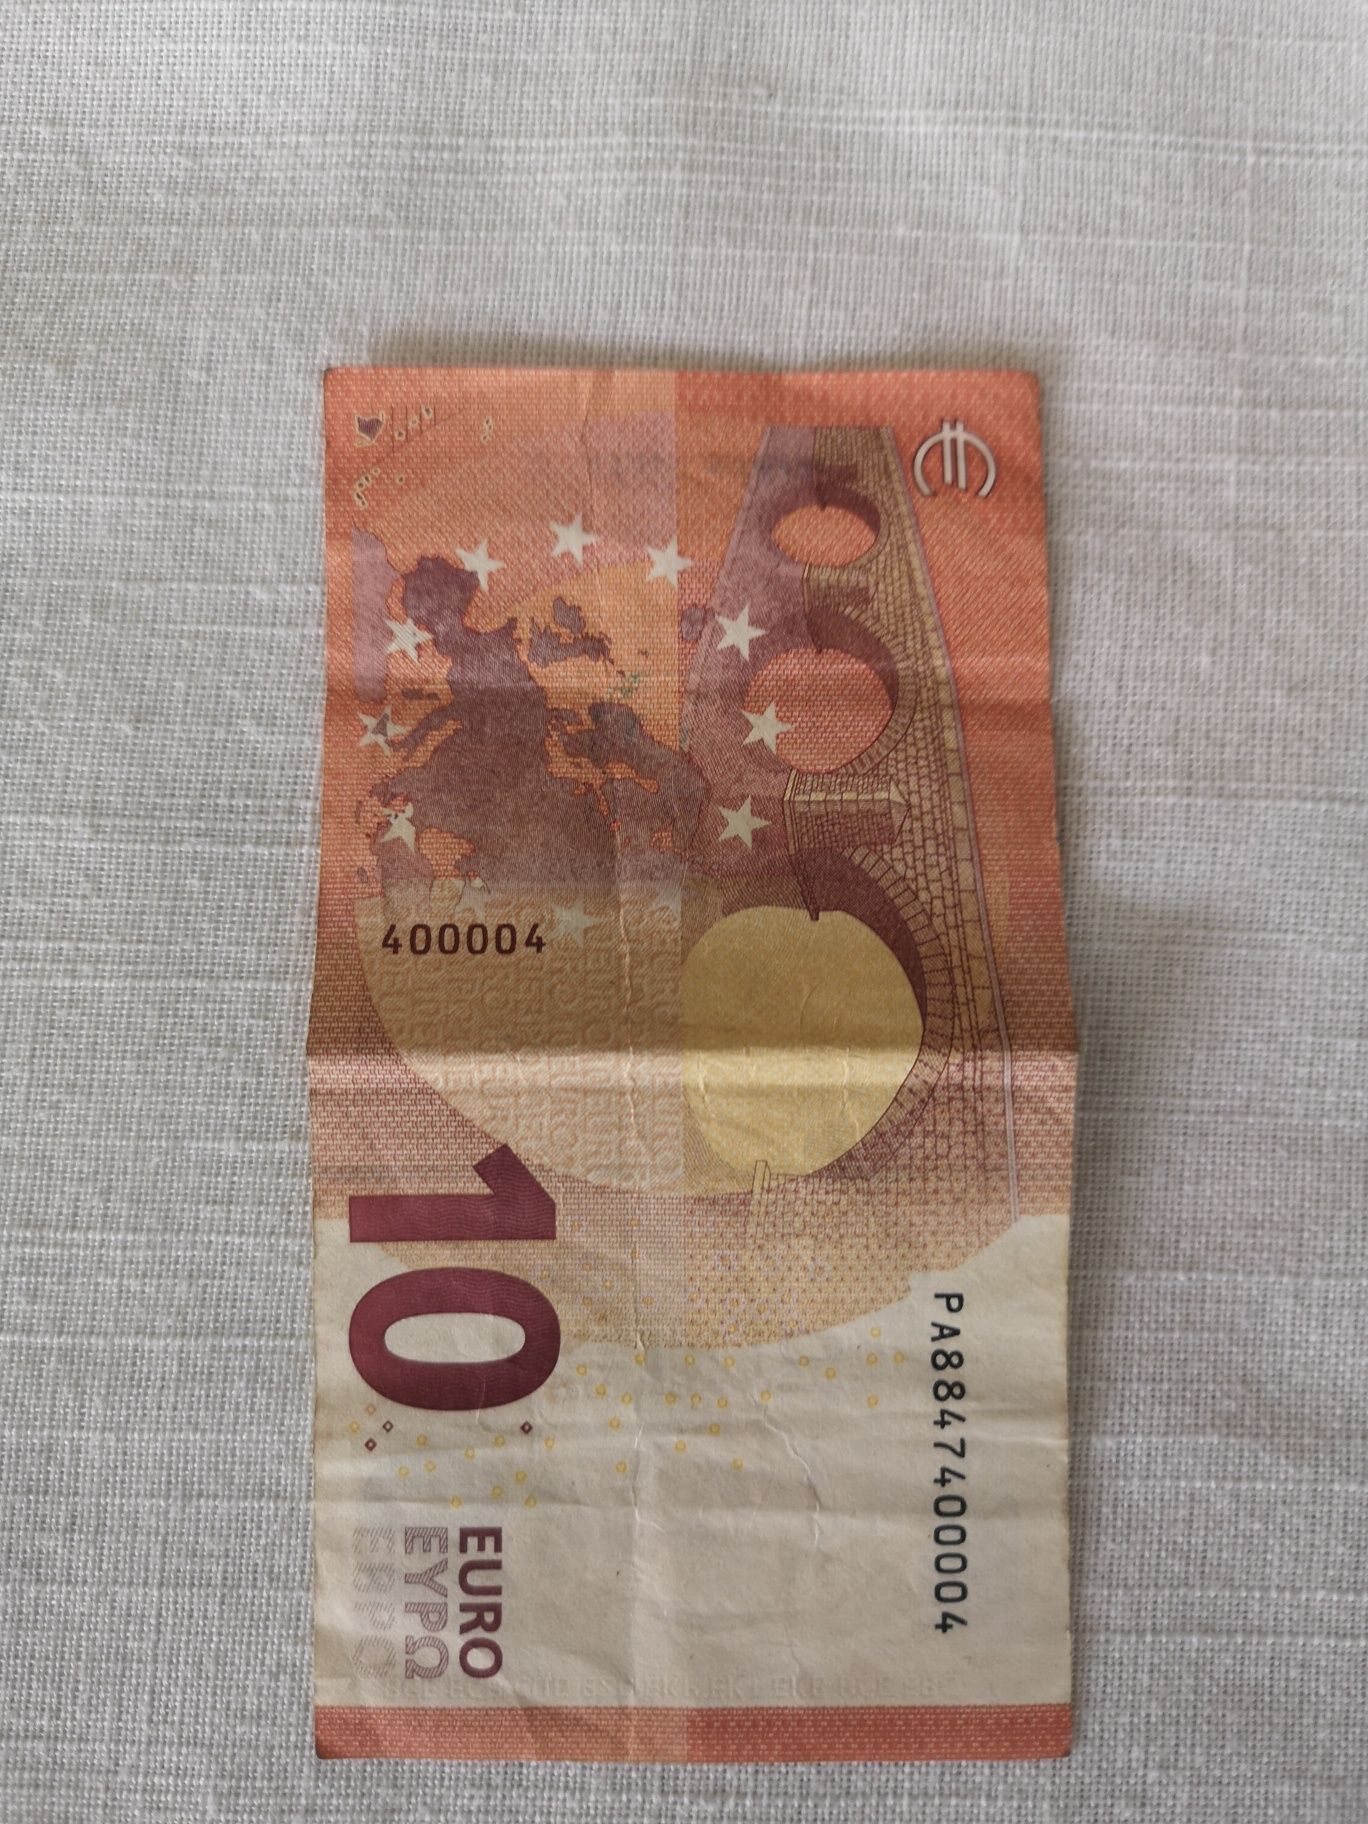 Nota capicua 10 euros